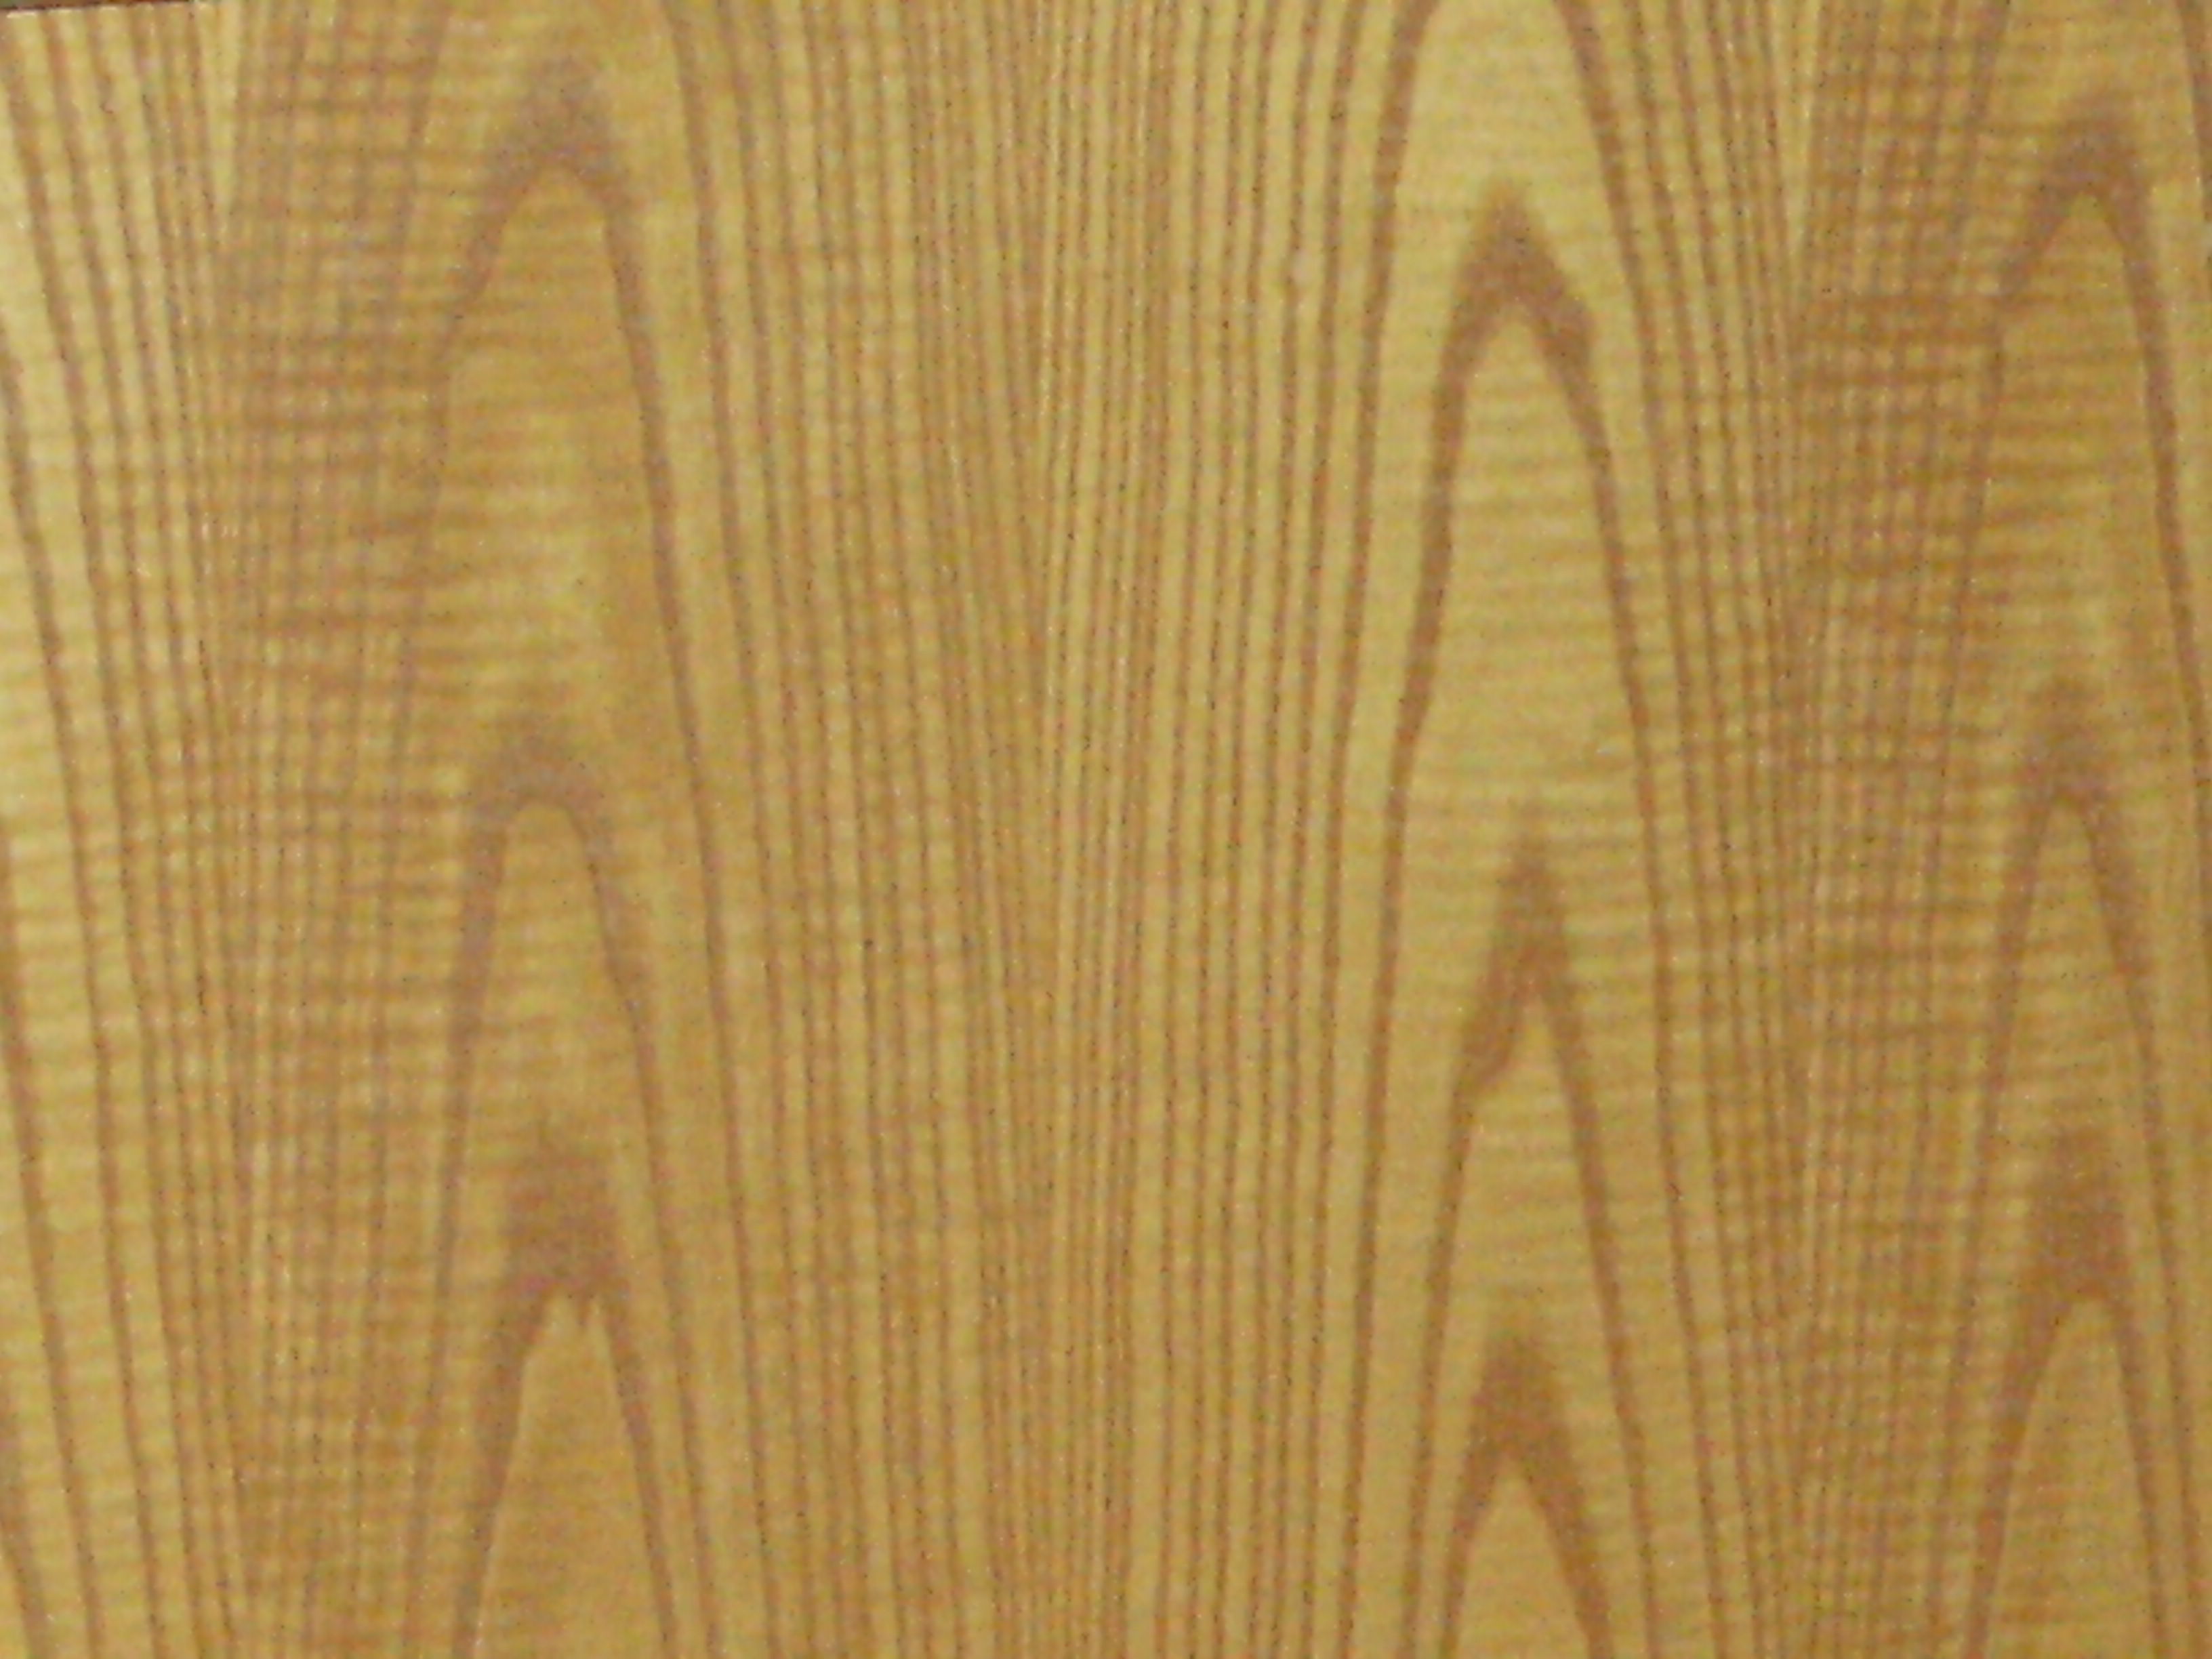 File:Fake wood.JPG - Wikimedia Commons